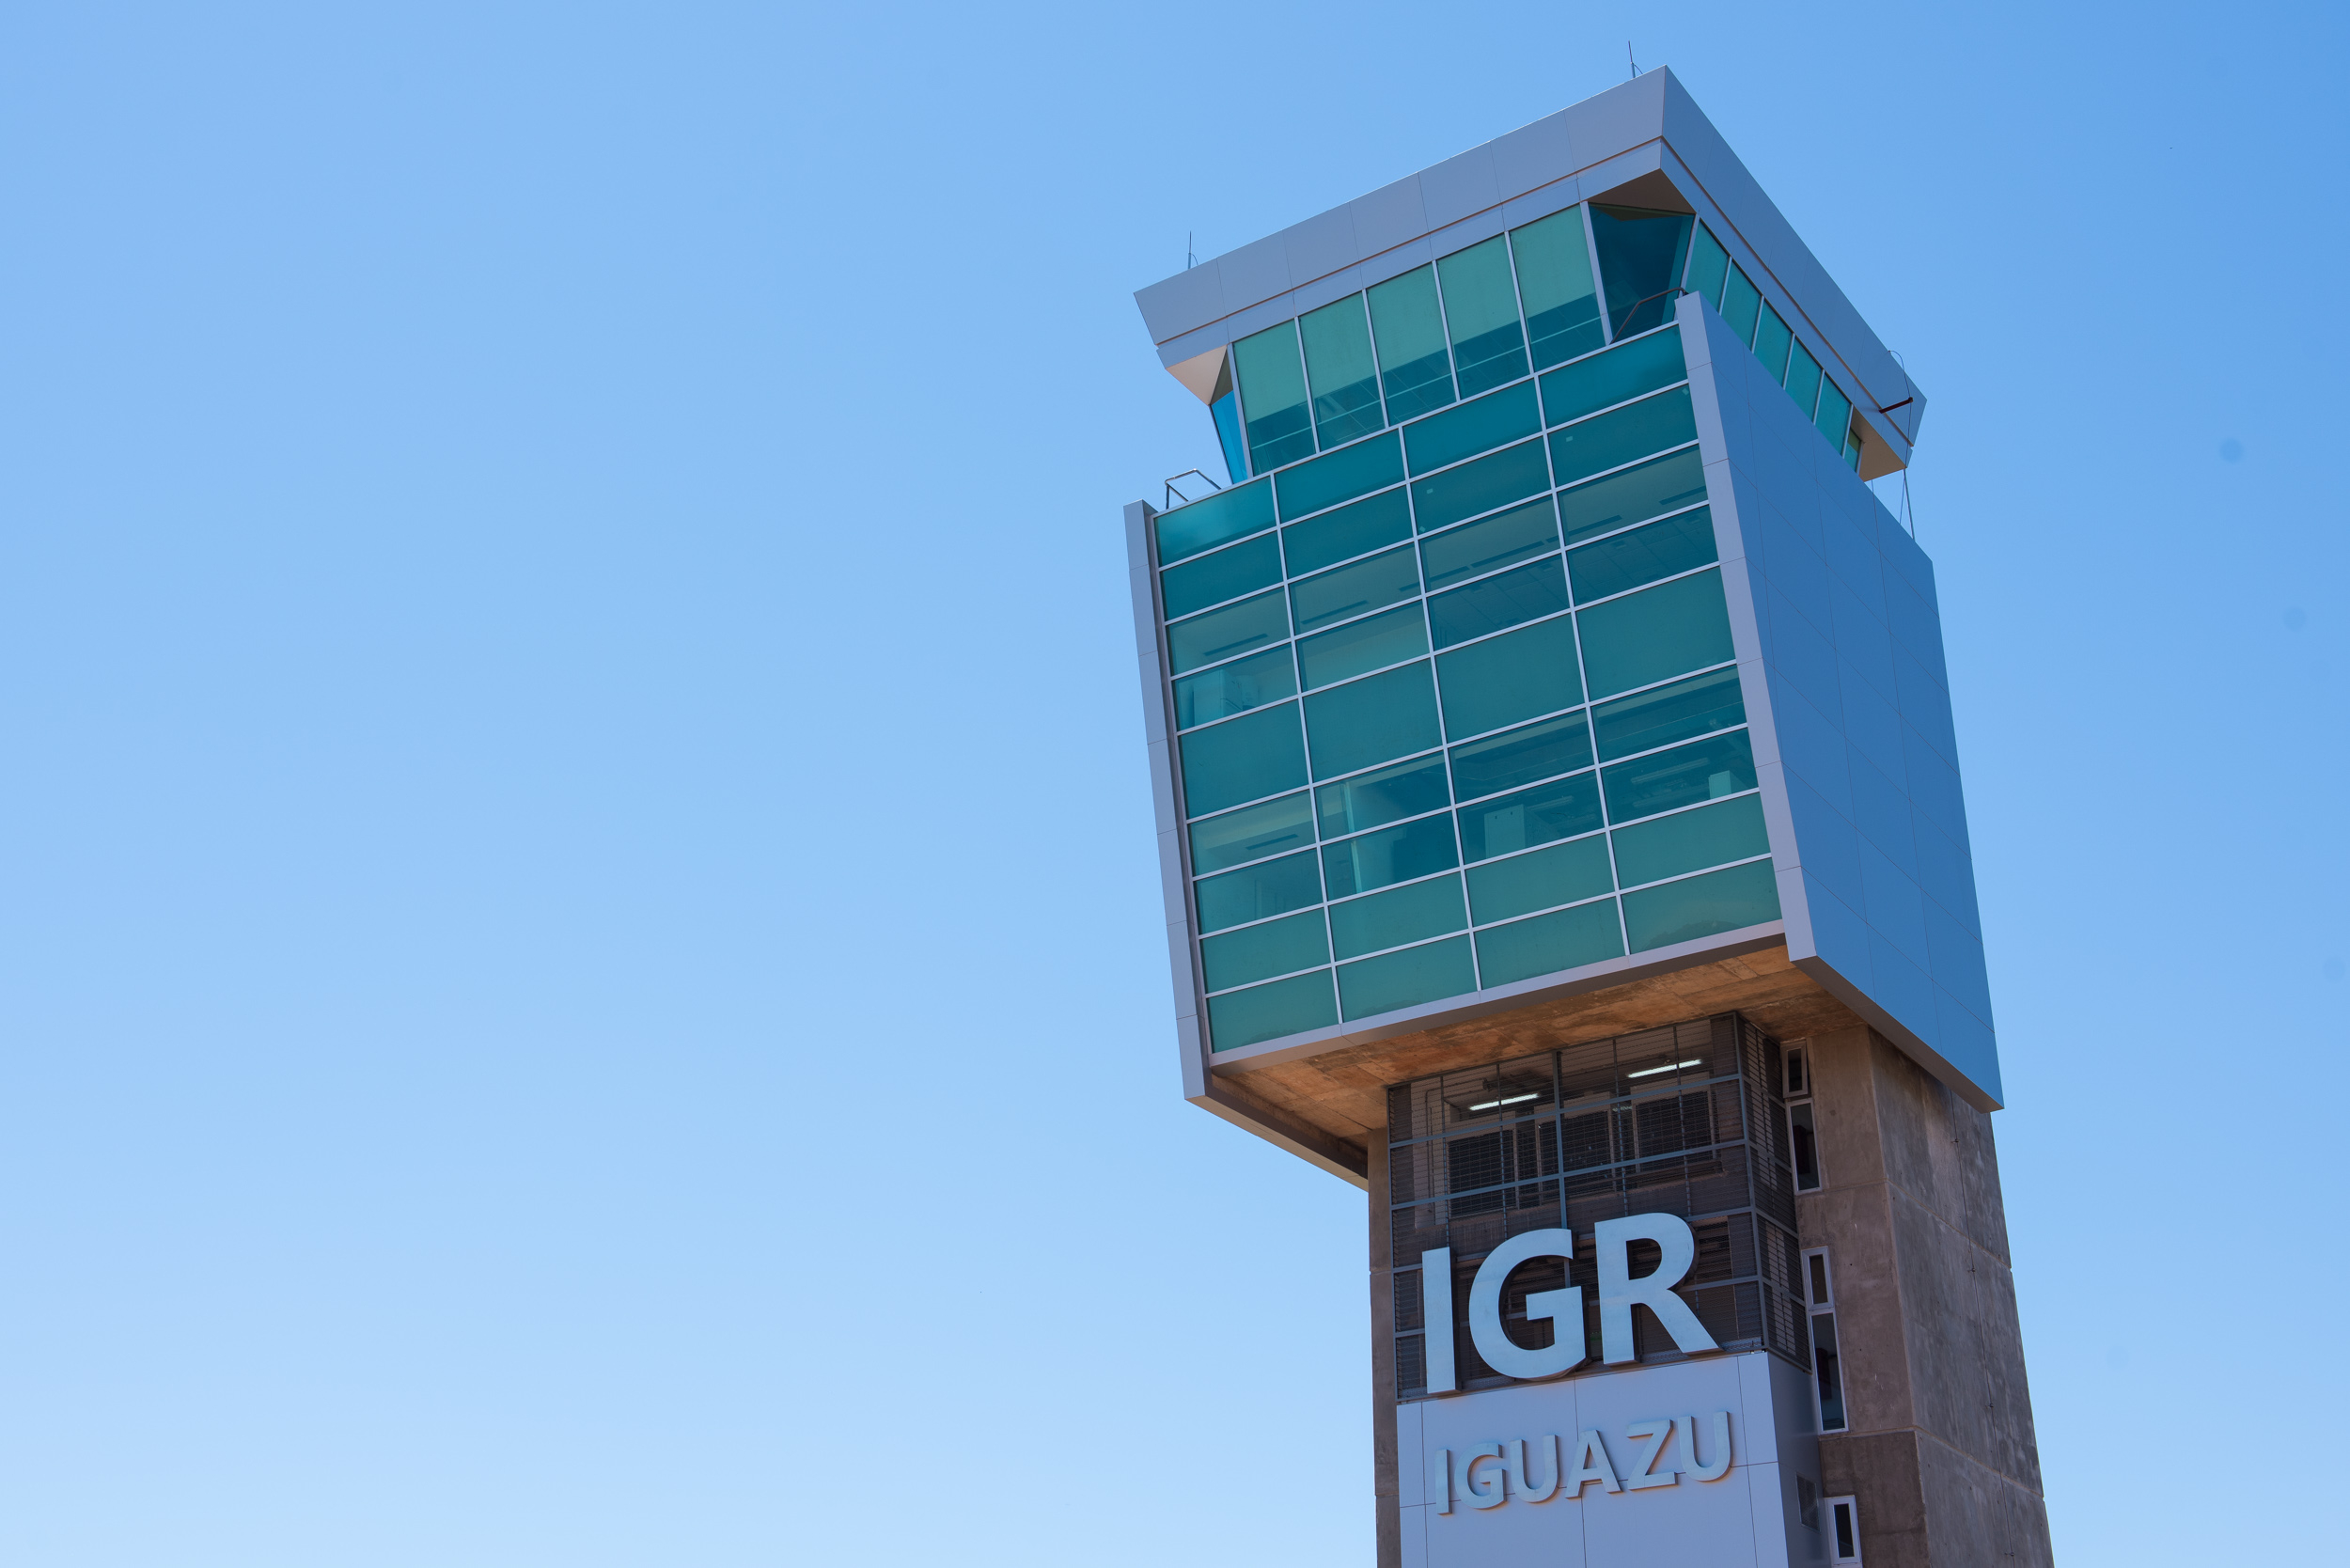 Aeropuerto Iguazu estreno torre de control